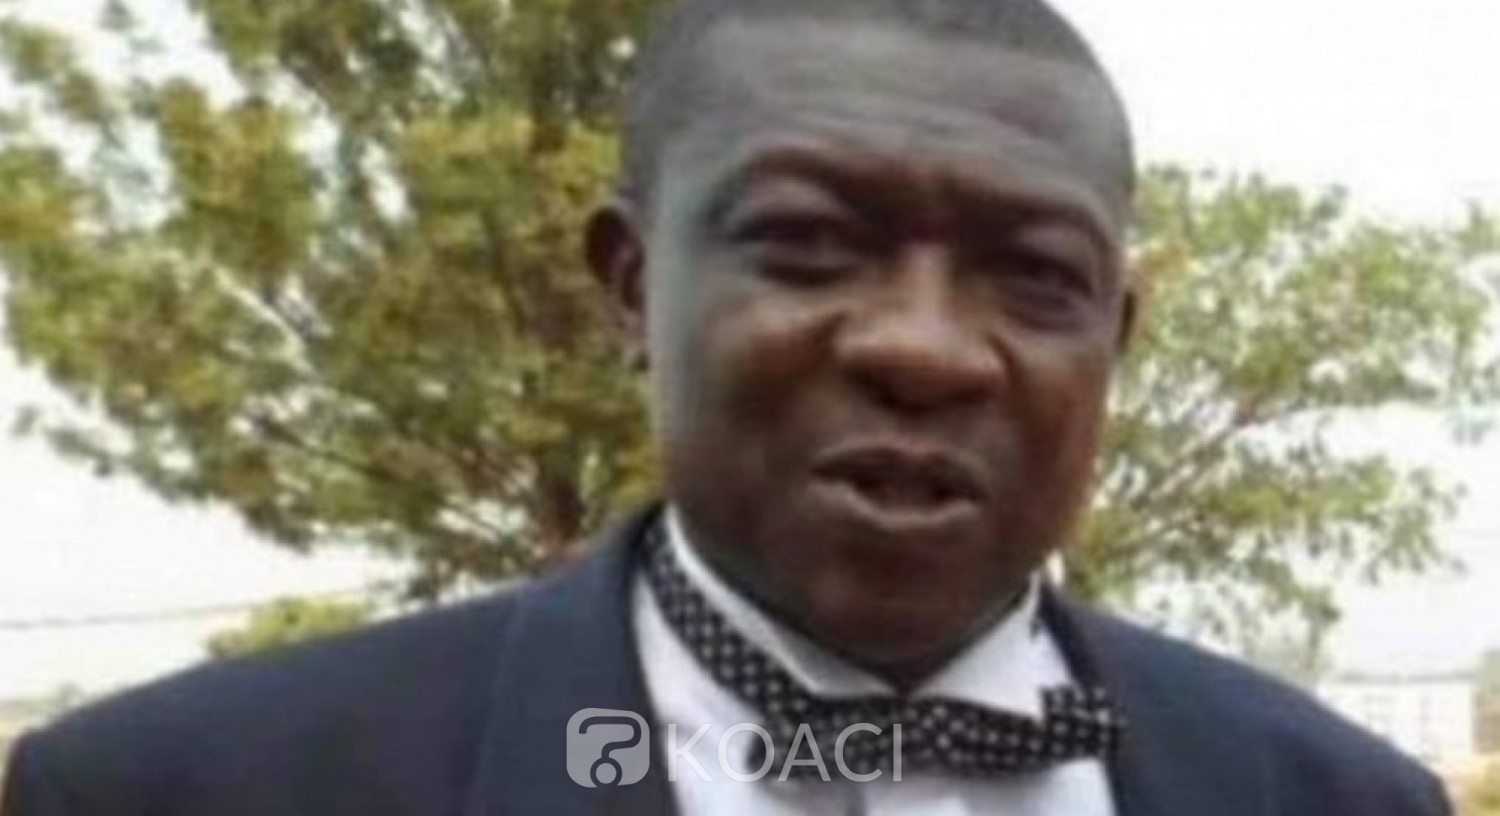 Cameroun : (Encore) un journaliste enlevé et torturé par des militaires, faut-il réellement faire confiance au régime Biya ?